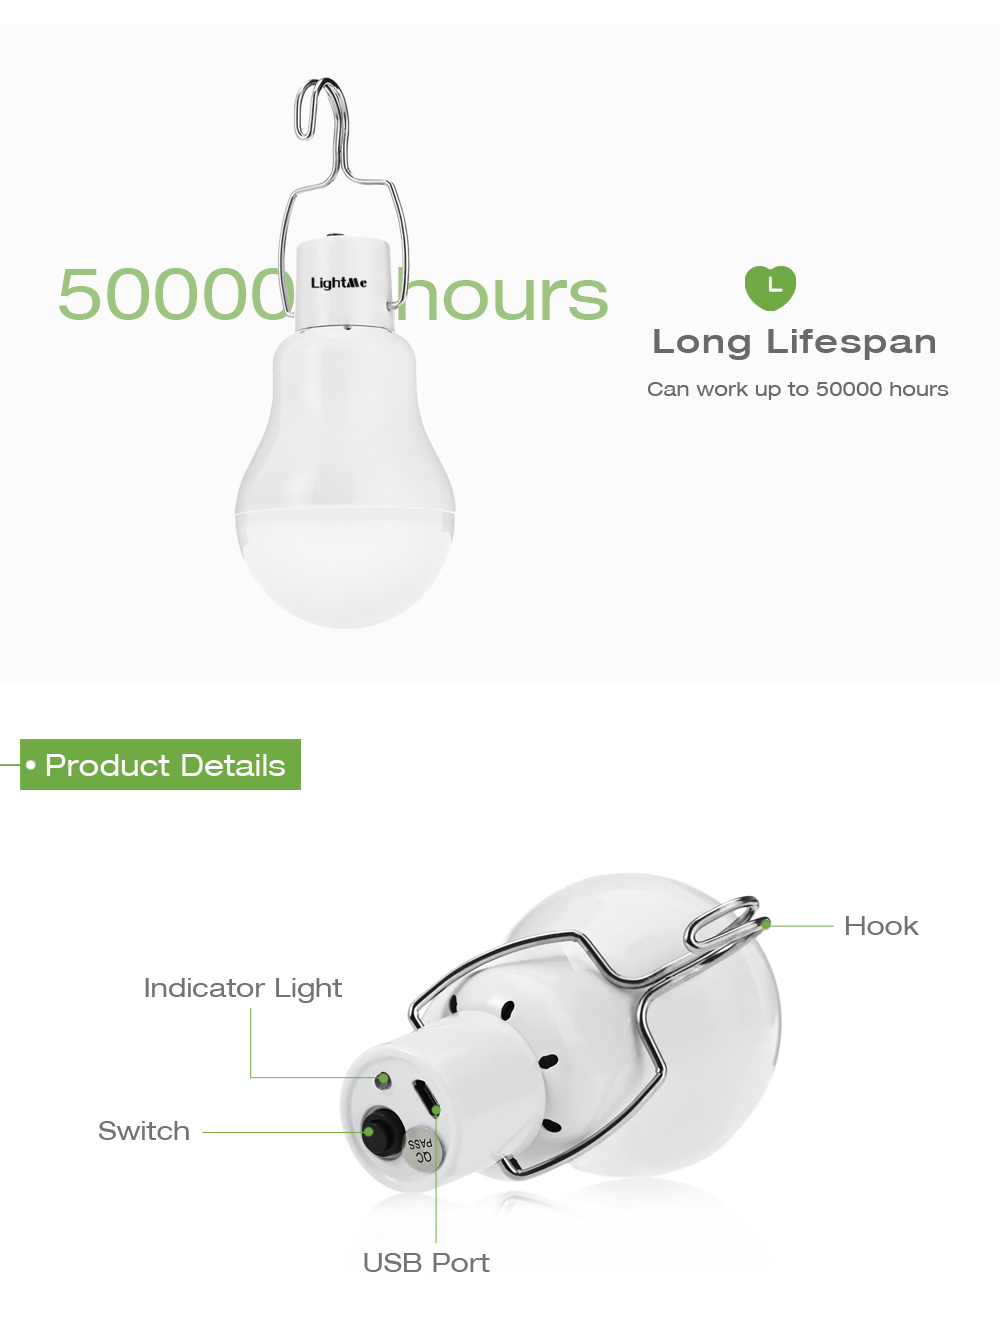 Lightme S - 1200 1.5W 130LM Portable LED Bulb Light Garden Solar Powered Energy Lamp